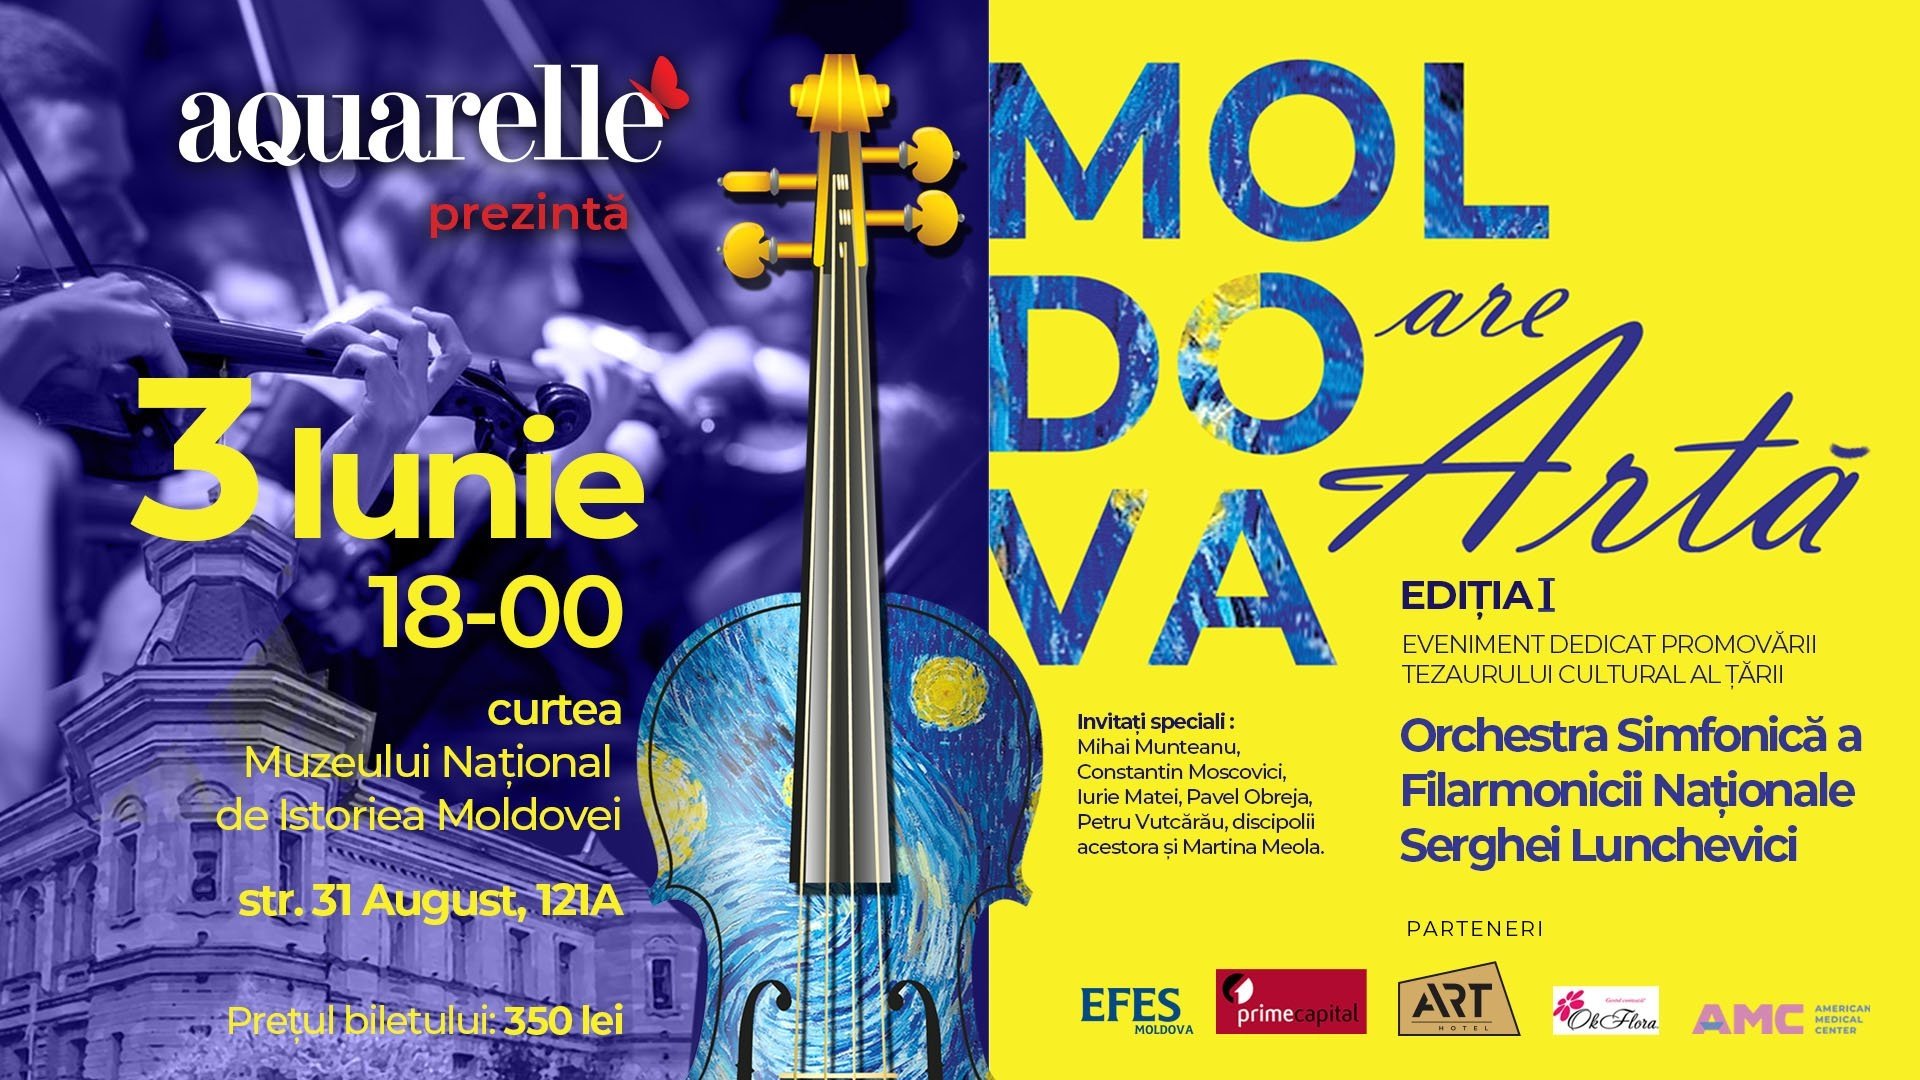 "Moldova are artă" - Eveniment dedicat promovării tezaurului cultural al țării